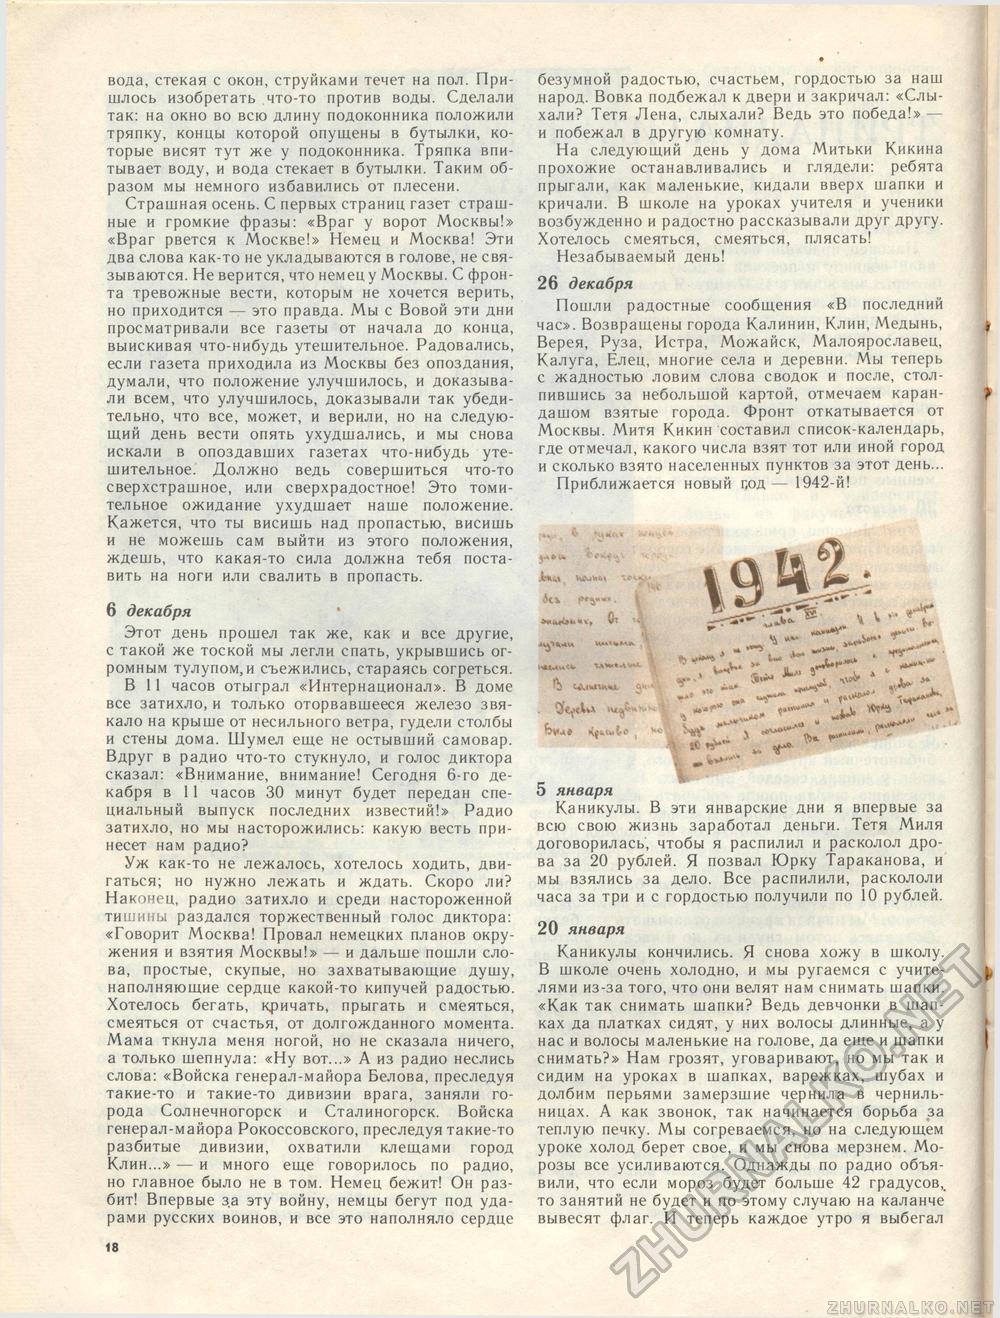  1986-02,  24